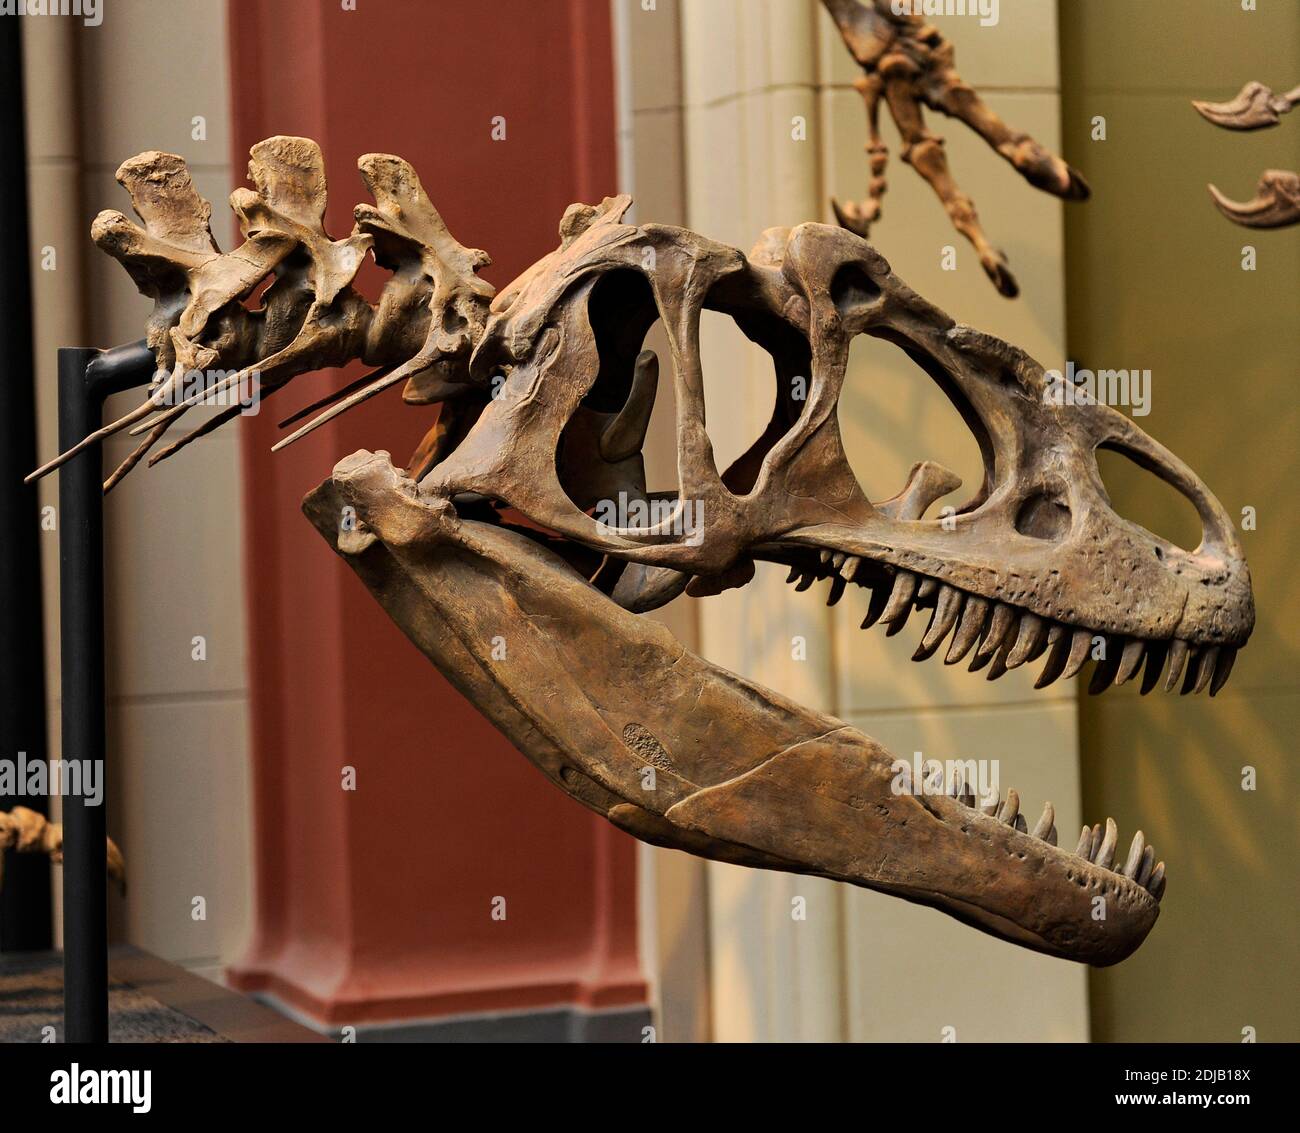 Allosaurus. Género de dinosaurio terópodo carnívoro que vivió hace 155 a 145 millones de años. Período Jurásico tardío. Predador bipedal. Cráneo con dientes grandes y dentados. Museo de Historia Natural, Berlín. Alemania. Foto de stock